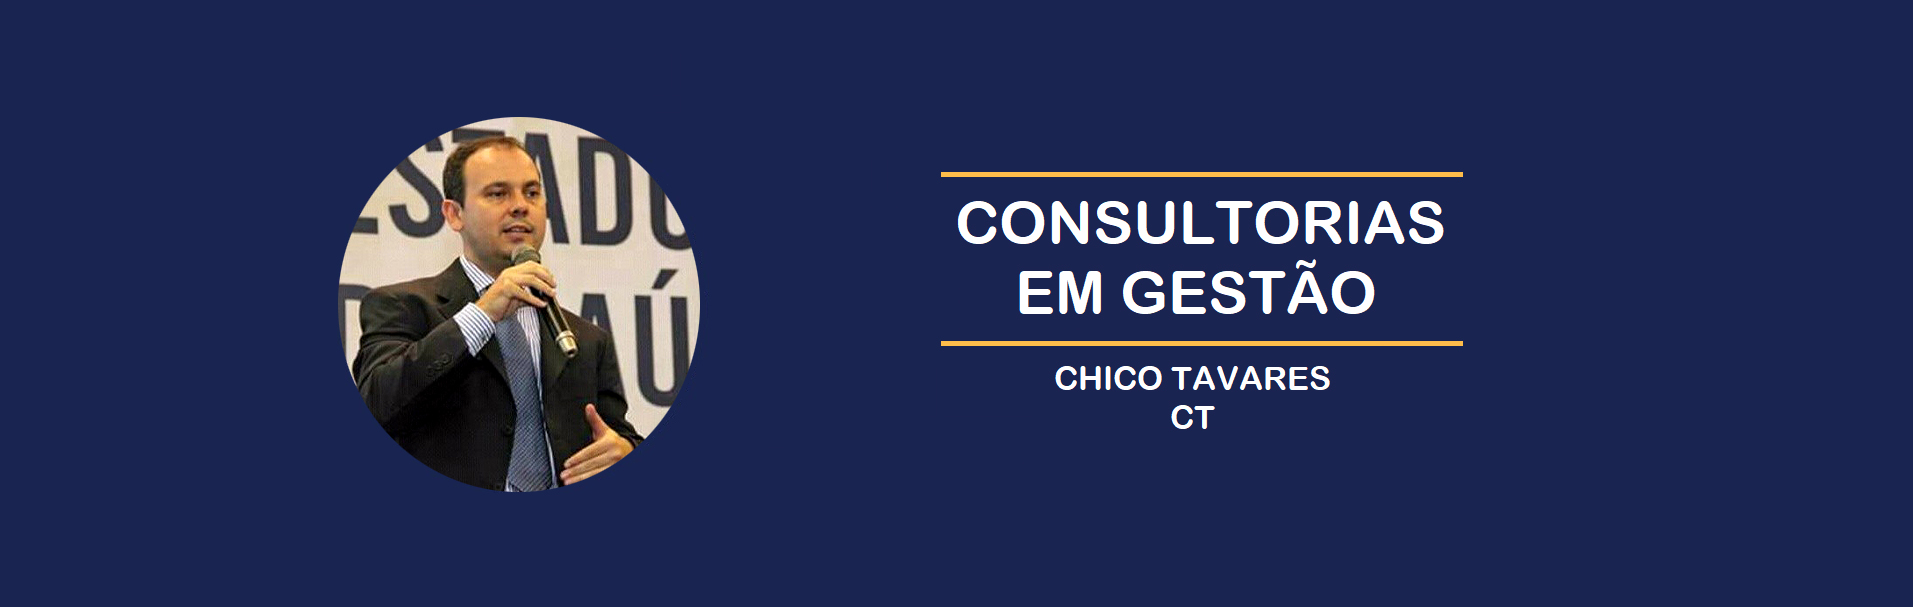 Chico Tavares Consultorias em Gestão